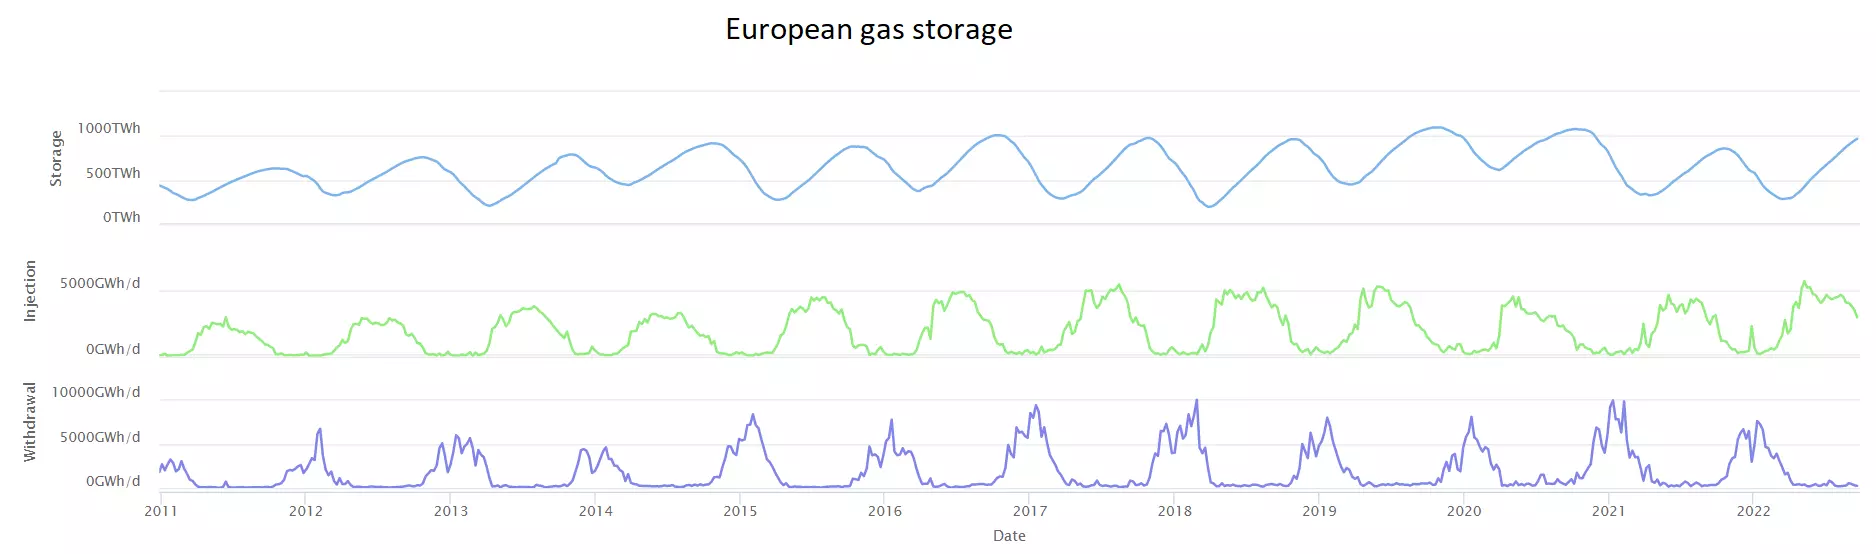 European gas storage chart